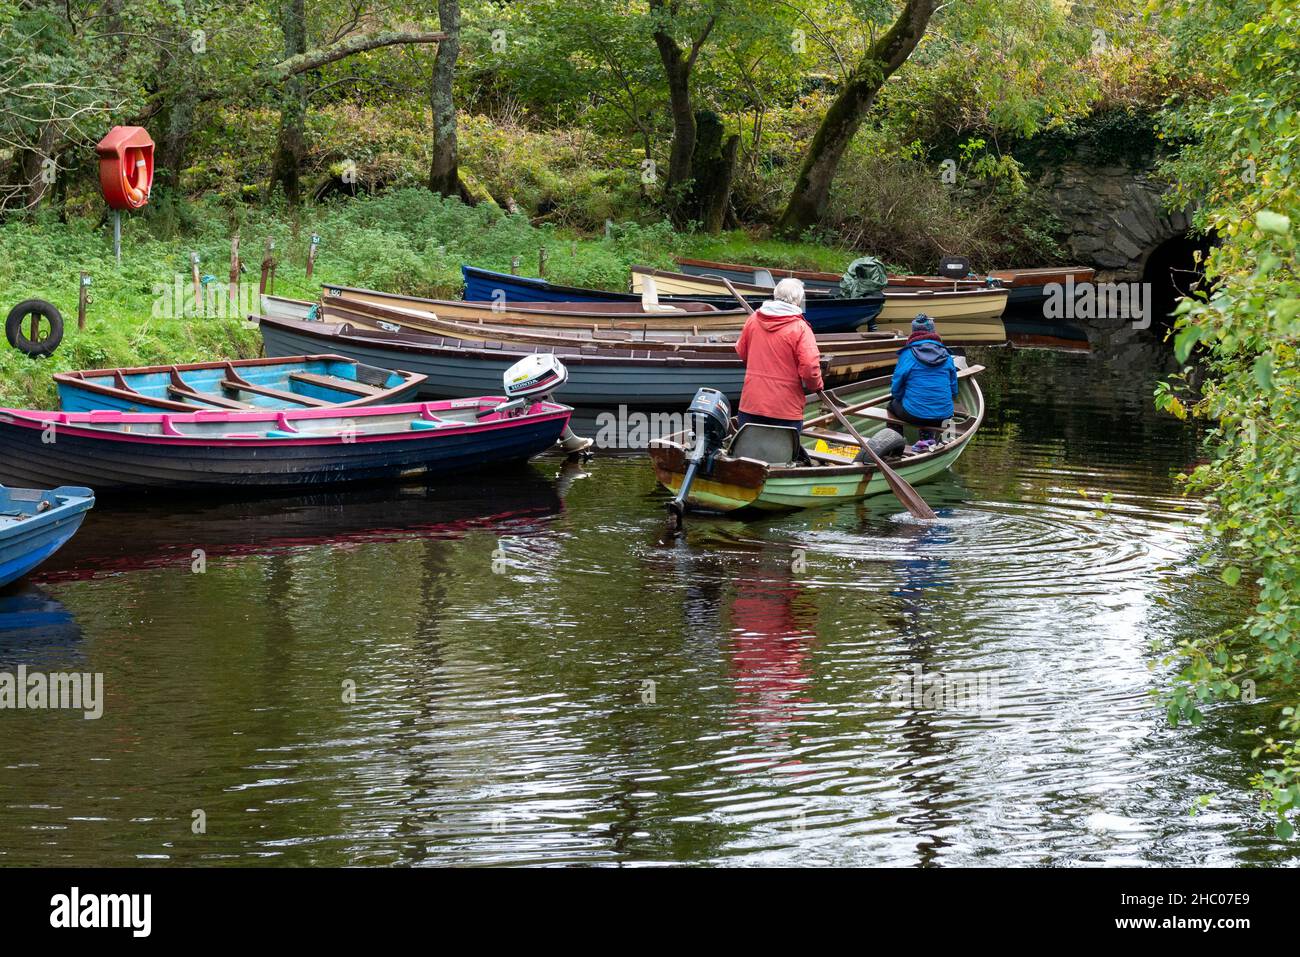 Les retraités pagayent sur un bateau à clinker dans le petit lac d'entrée dans le parc national de Killarney, comté de Kerry, Irlande, Europe Banque D'Images